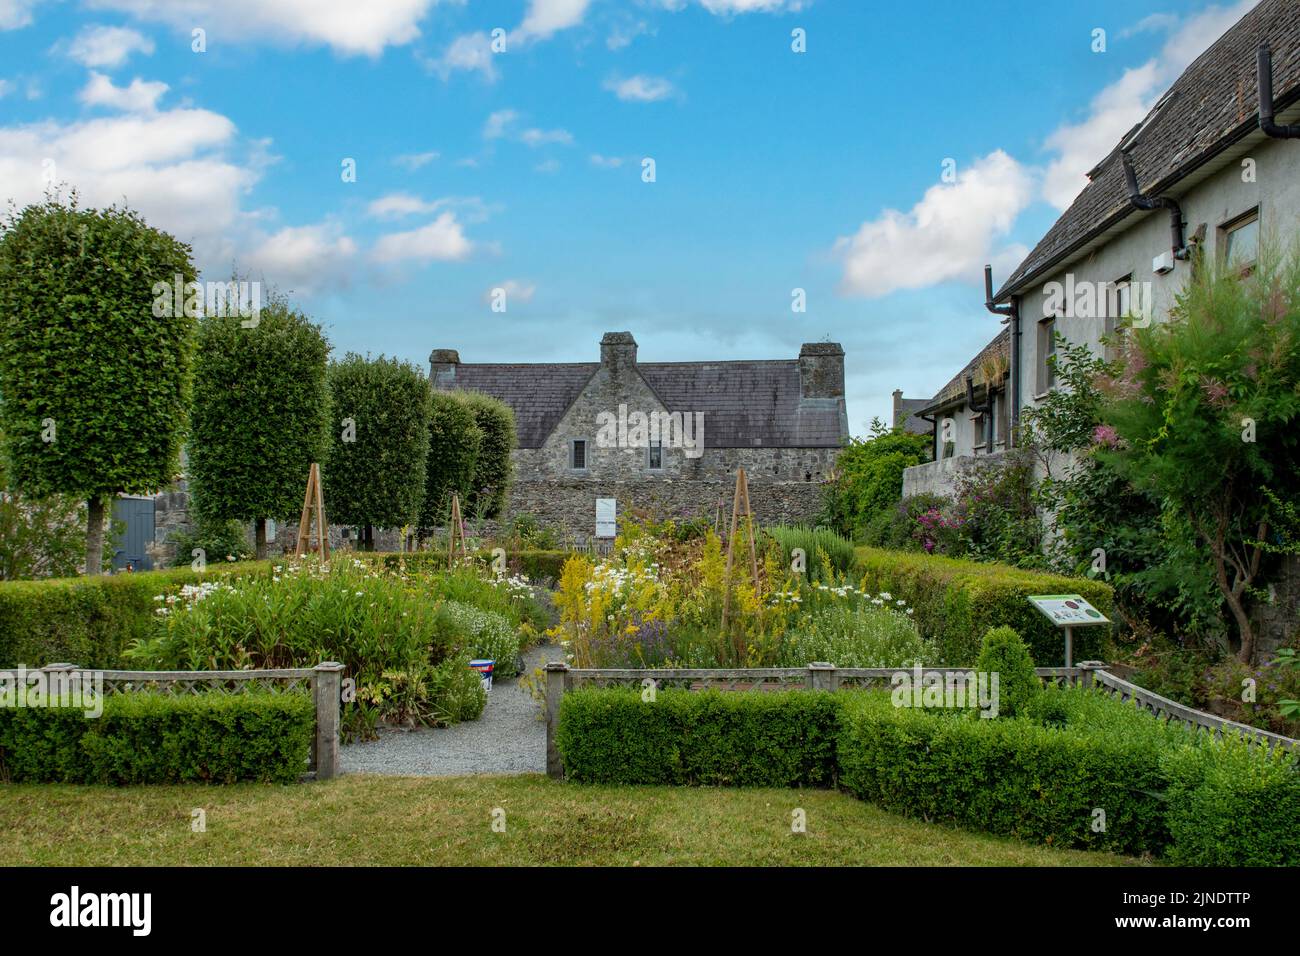 The Garden at Rothe House, Kilkenny, Co. Kilkenny, Ireland Stock Photo